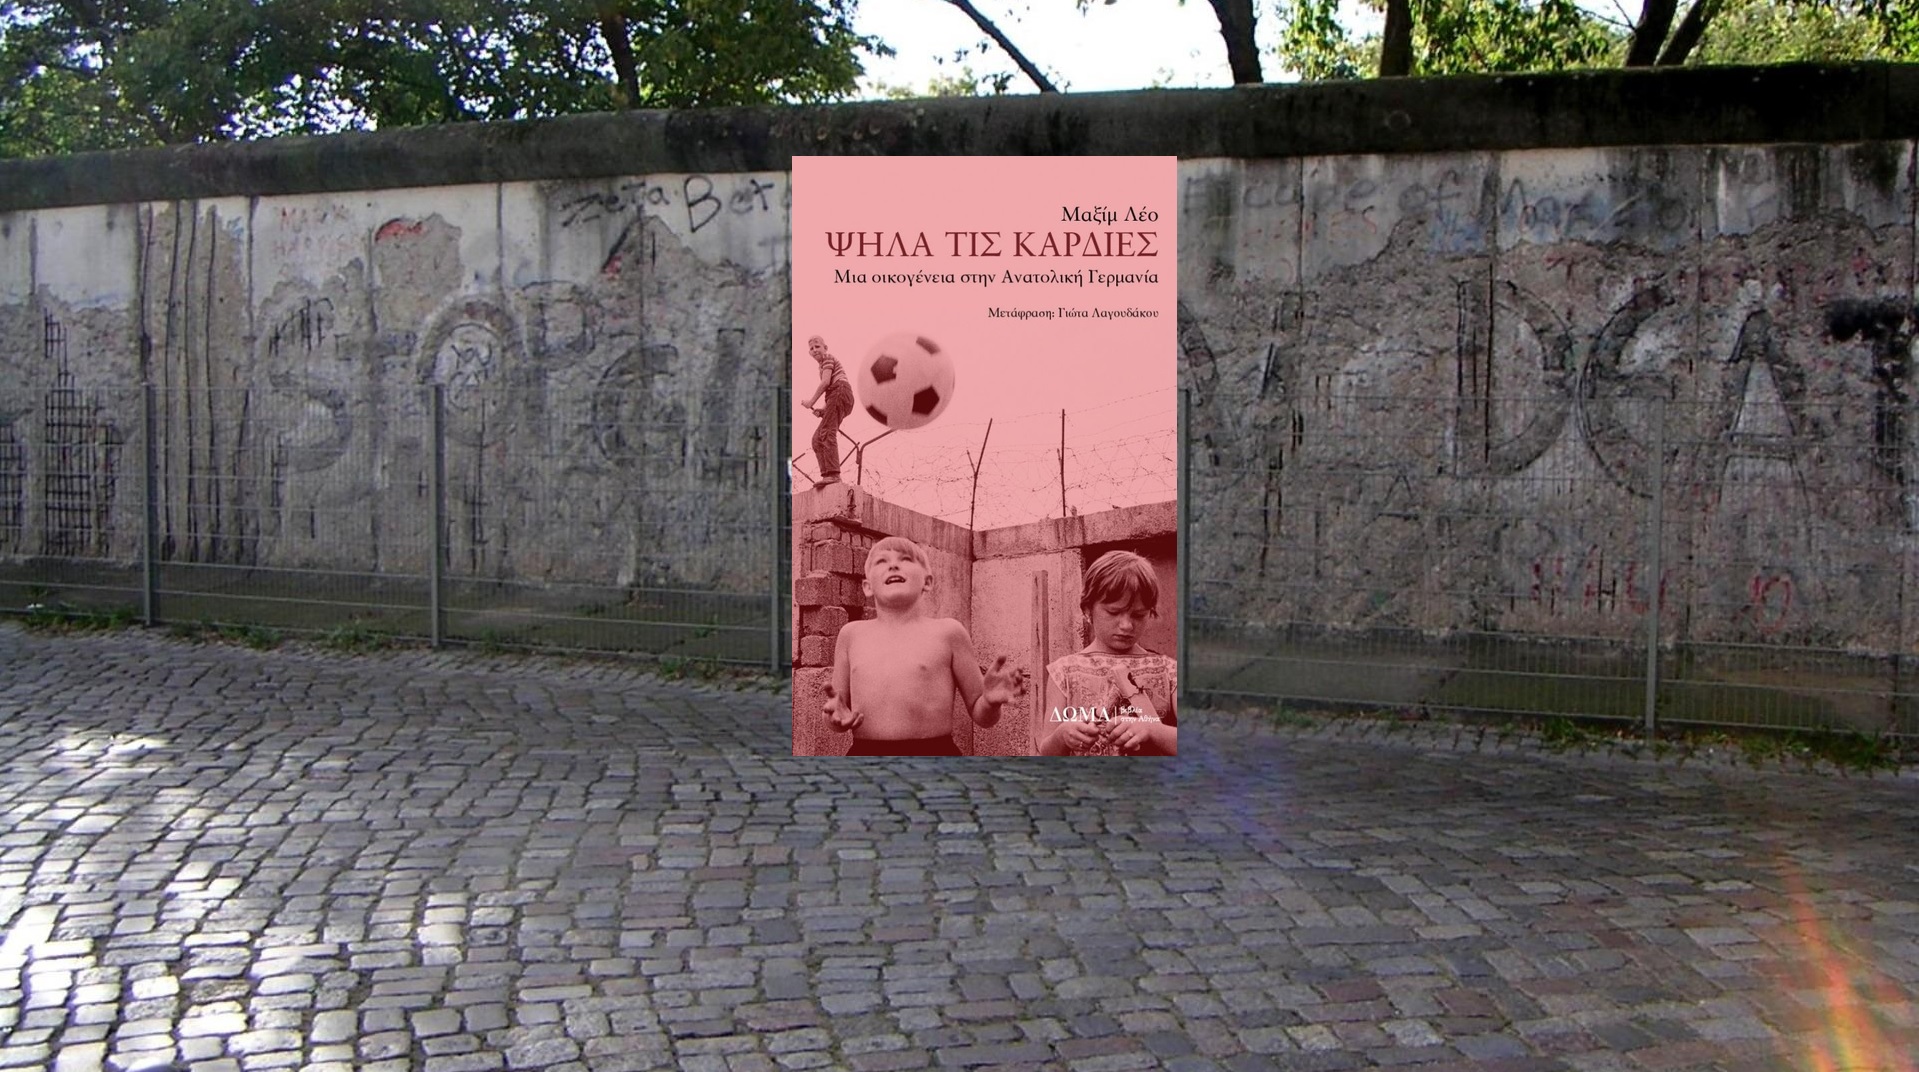 Εξώφυλλο του βιβλίου «Ψηλά τις καρδιές» - Μια οικογένεια στην Ανατολική Γερμανία με φόντο το τείχος στη Βερολίνο